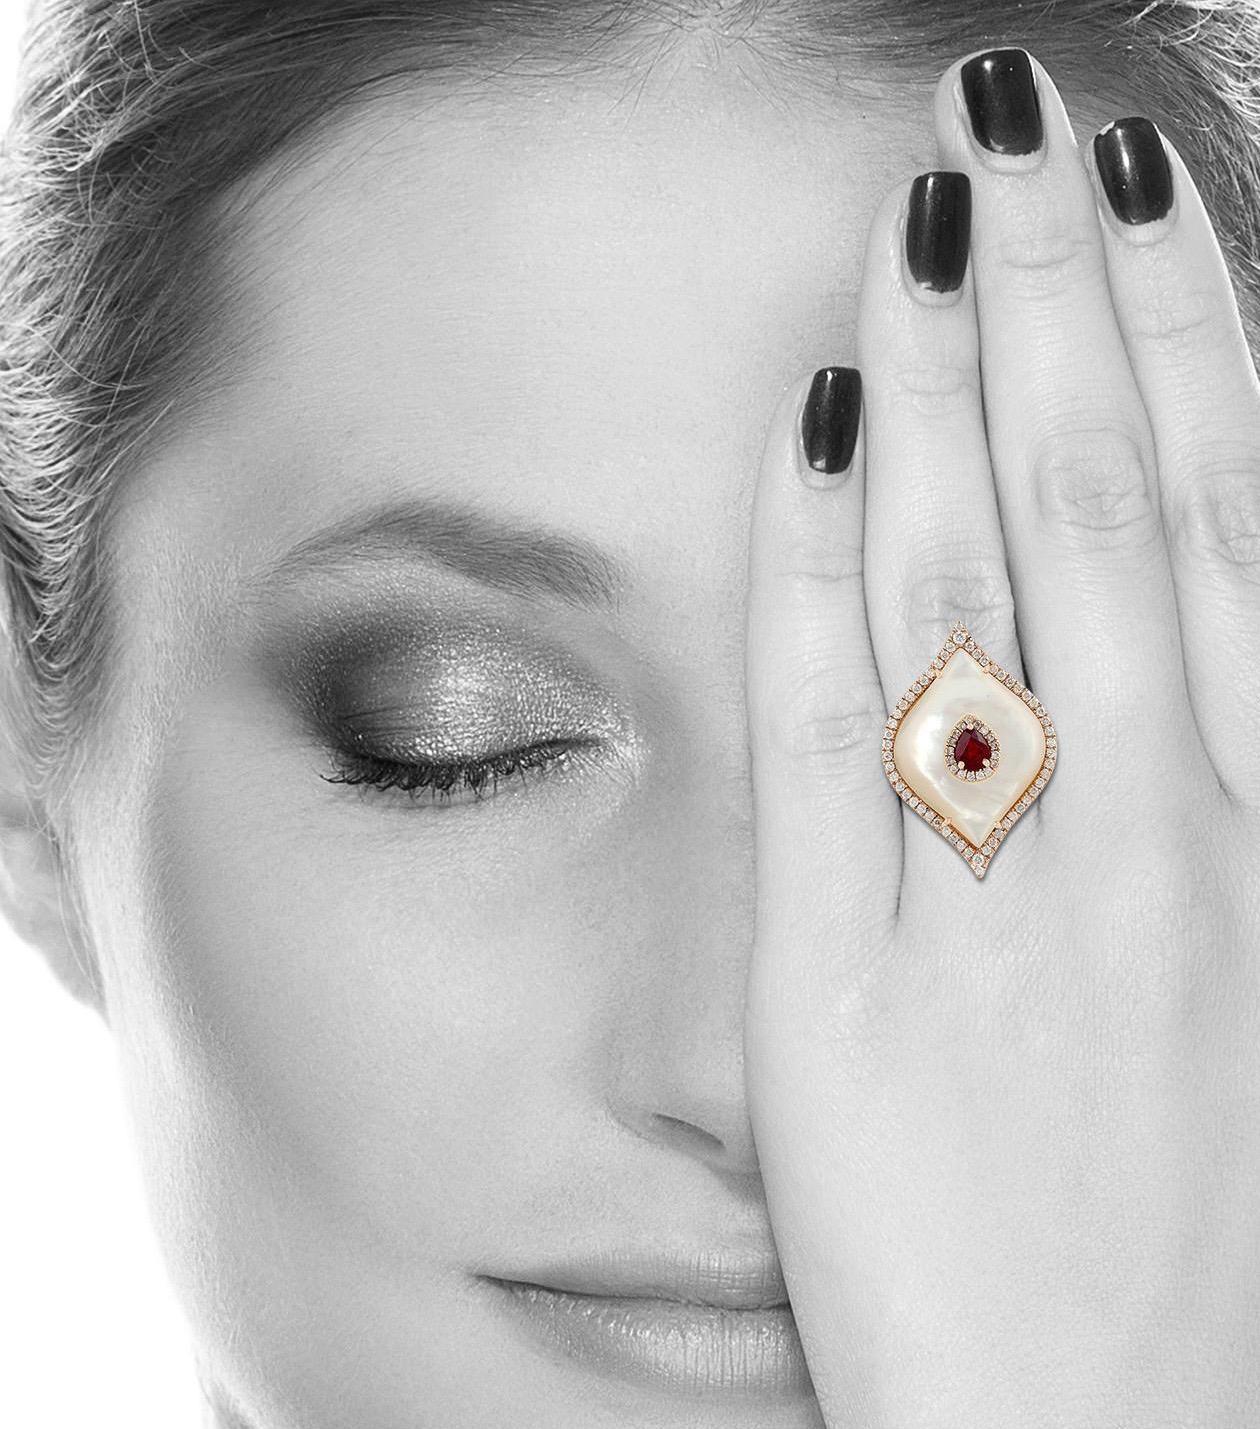 Dieser Ring wurde in sorgfältiger Handarbeit aus 18-karätigem Gold gefertigt. Er ist von Hand mit 5,9 Karat Perlmutt, 0,5 Karat Rubin und 0,89 Karat funkelnden Diamanten besetzt.

Der Ring hat die Größe 7 und kann auf Anfrage größer oder kleiner